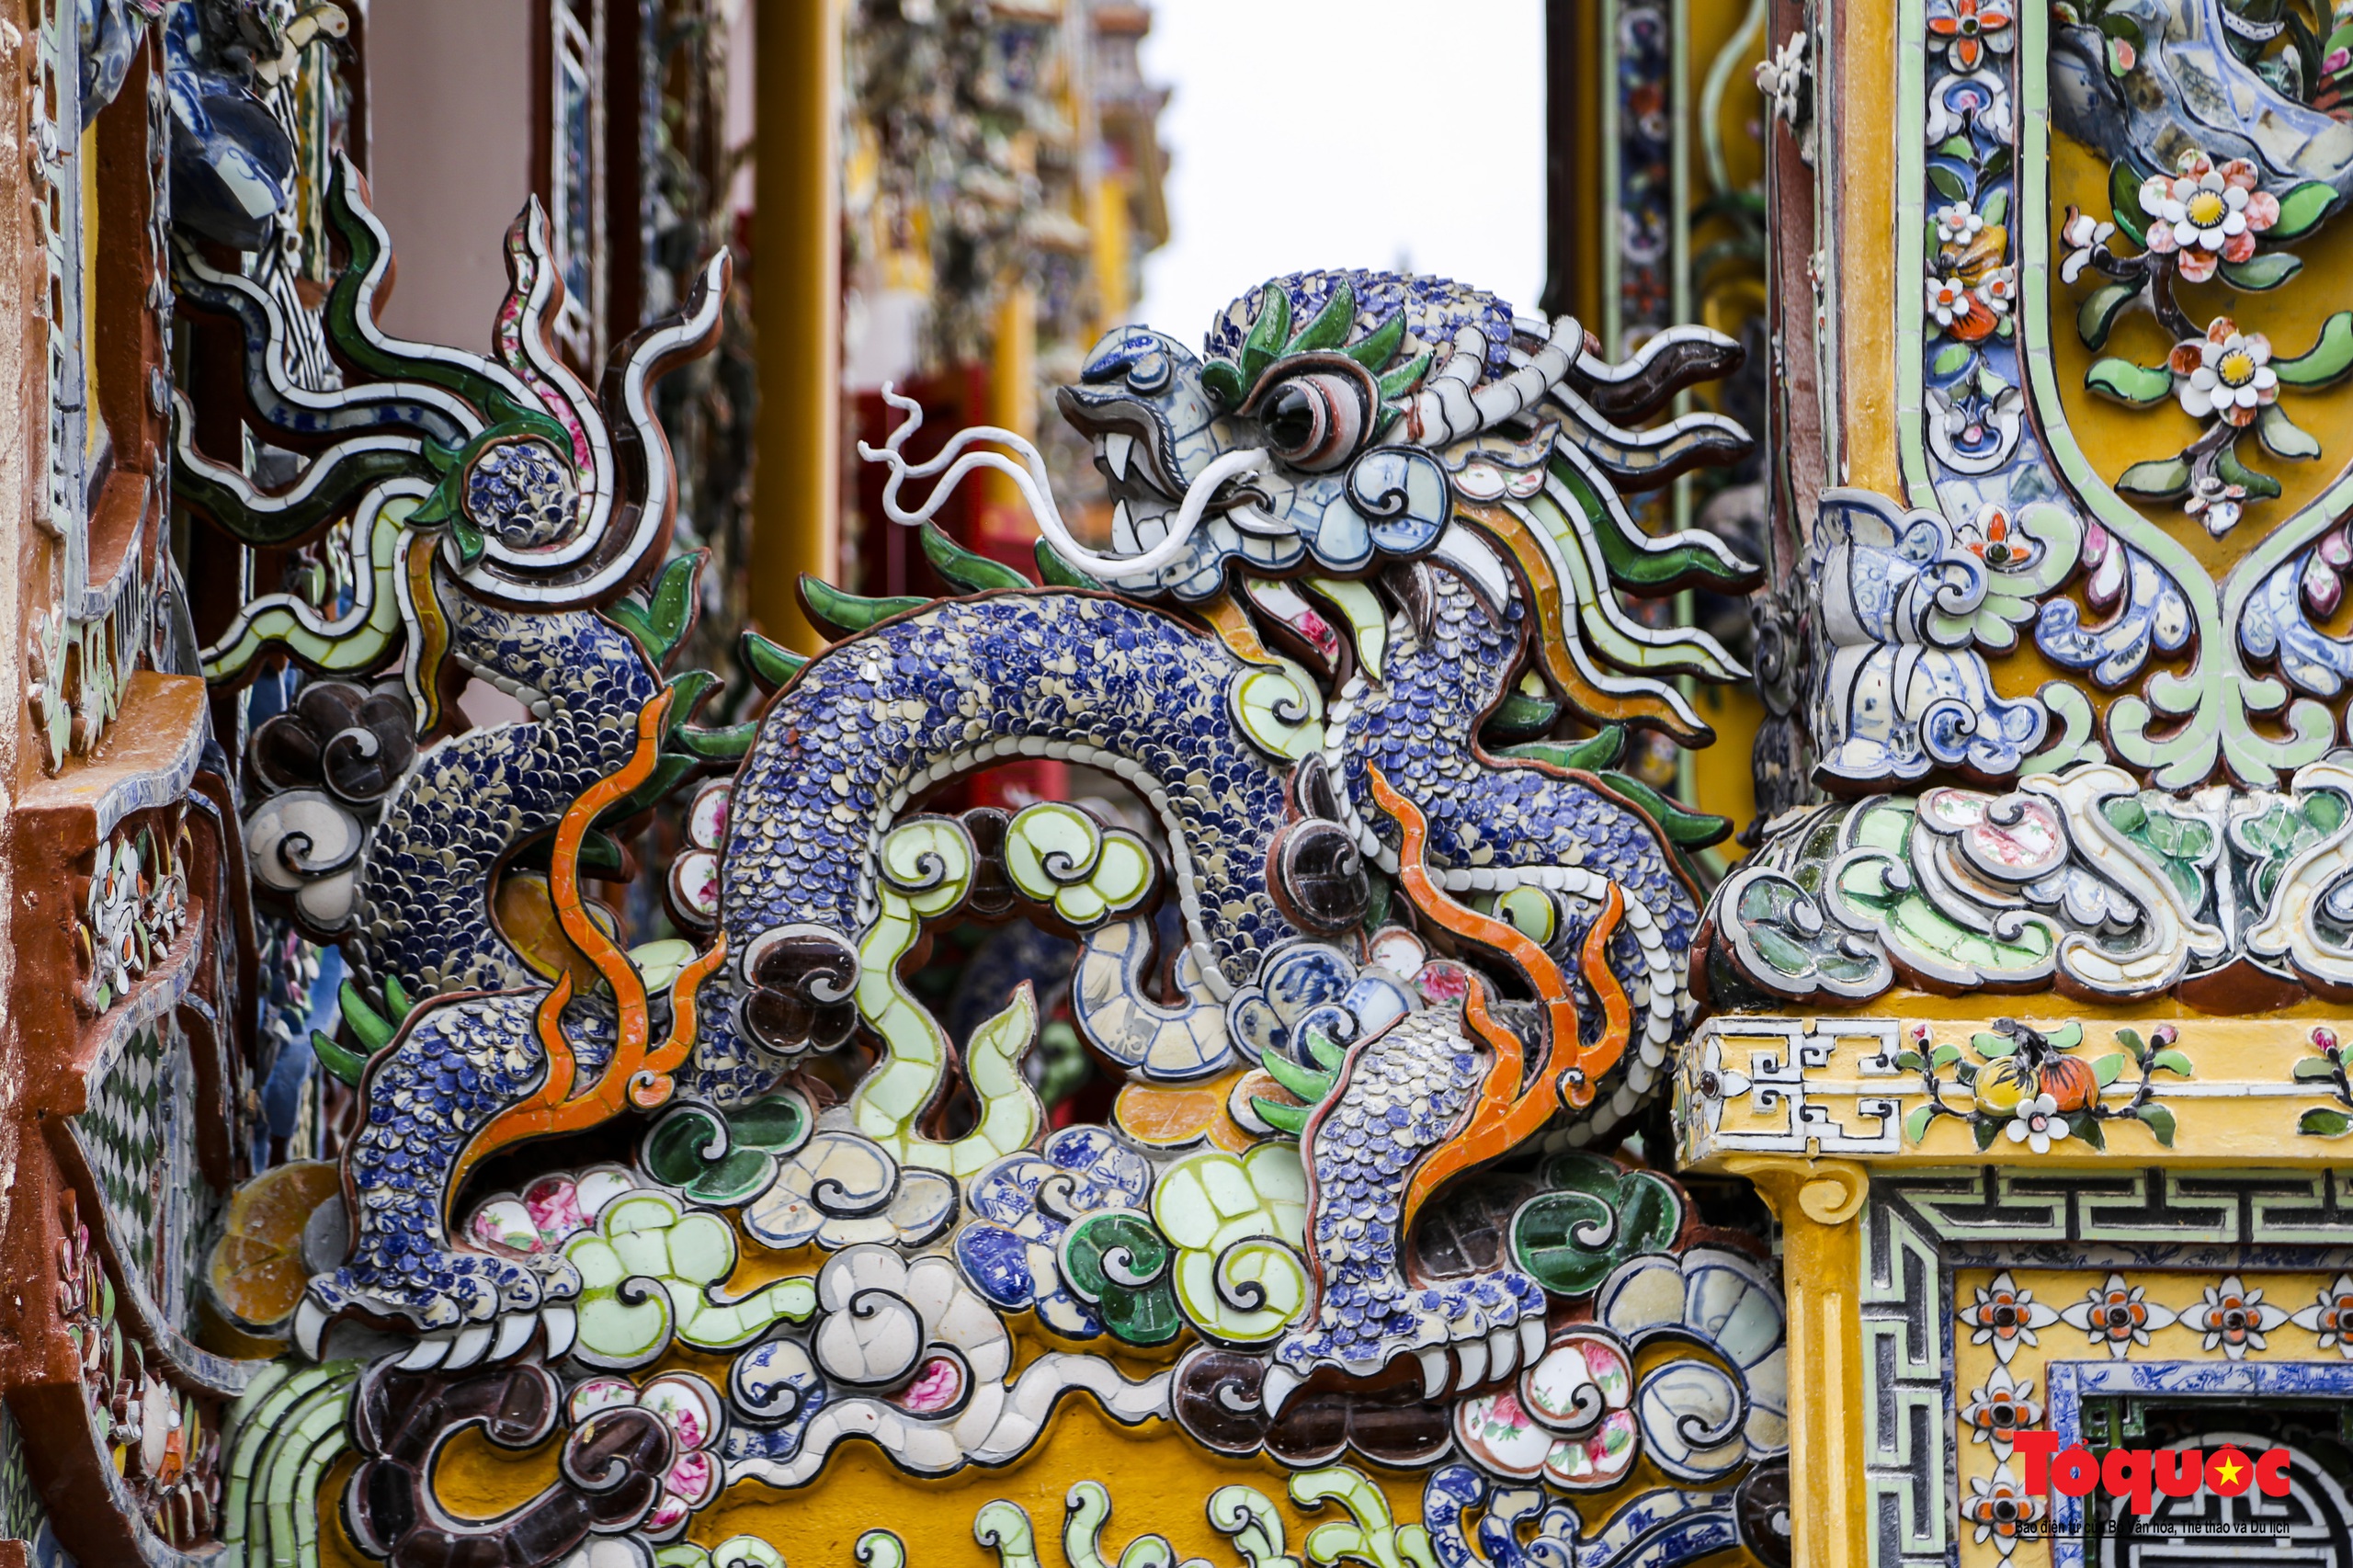 Ngắm biểu tượng rồng trên các công trình kiến trúc, cổ vật triều Nguyễn - Ảnh 21.